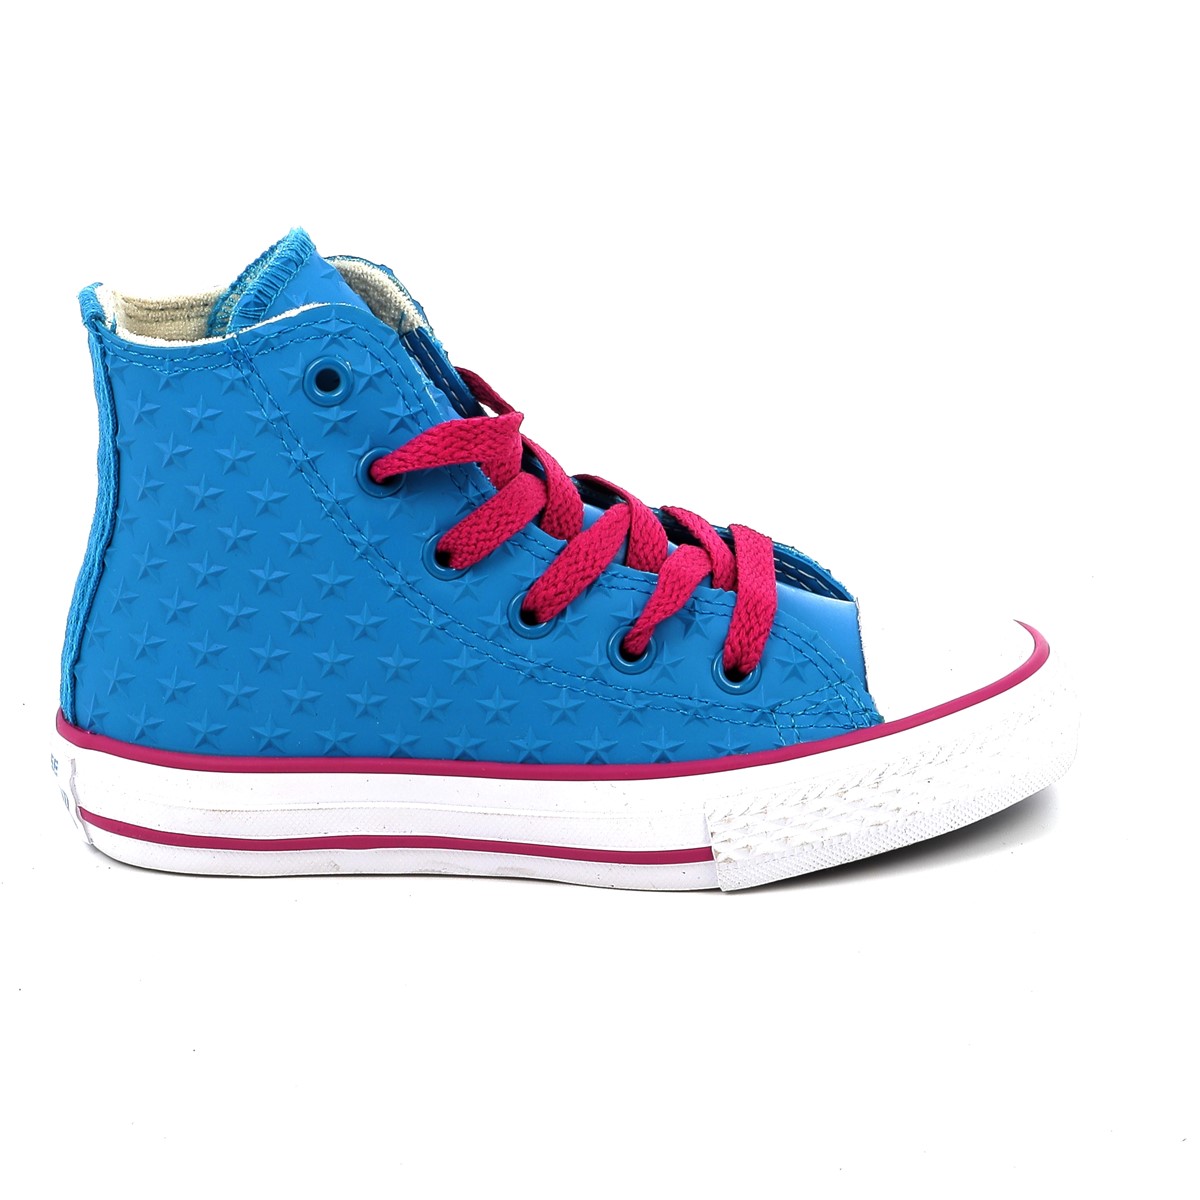 Παιδικό Μποτάκι Casual για Κορίτσι All Star Converse Χρώματος Μπλε Ρουά 650017C - ALL STAR - 